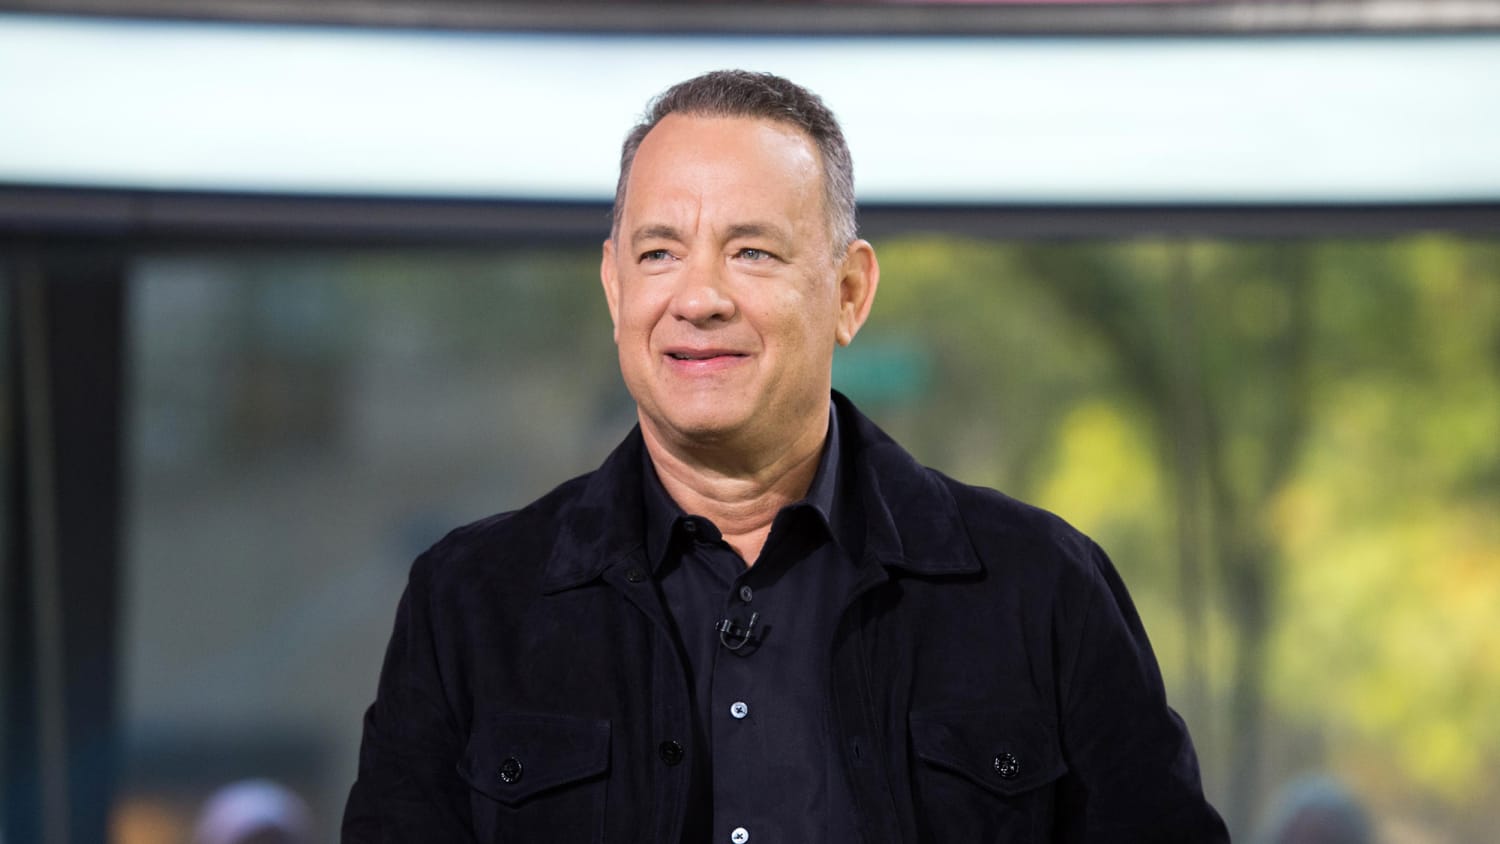 Tom Hanks pulls back curtain on 'SNL' debate sketch prep